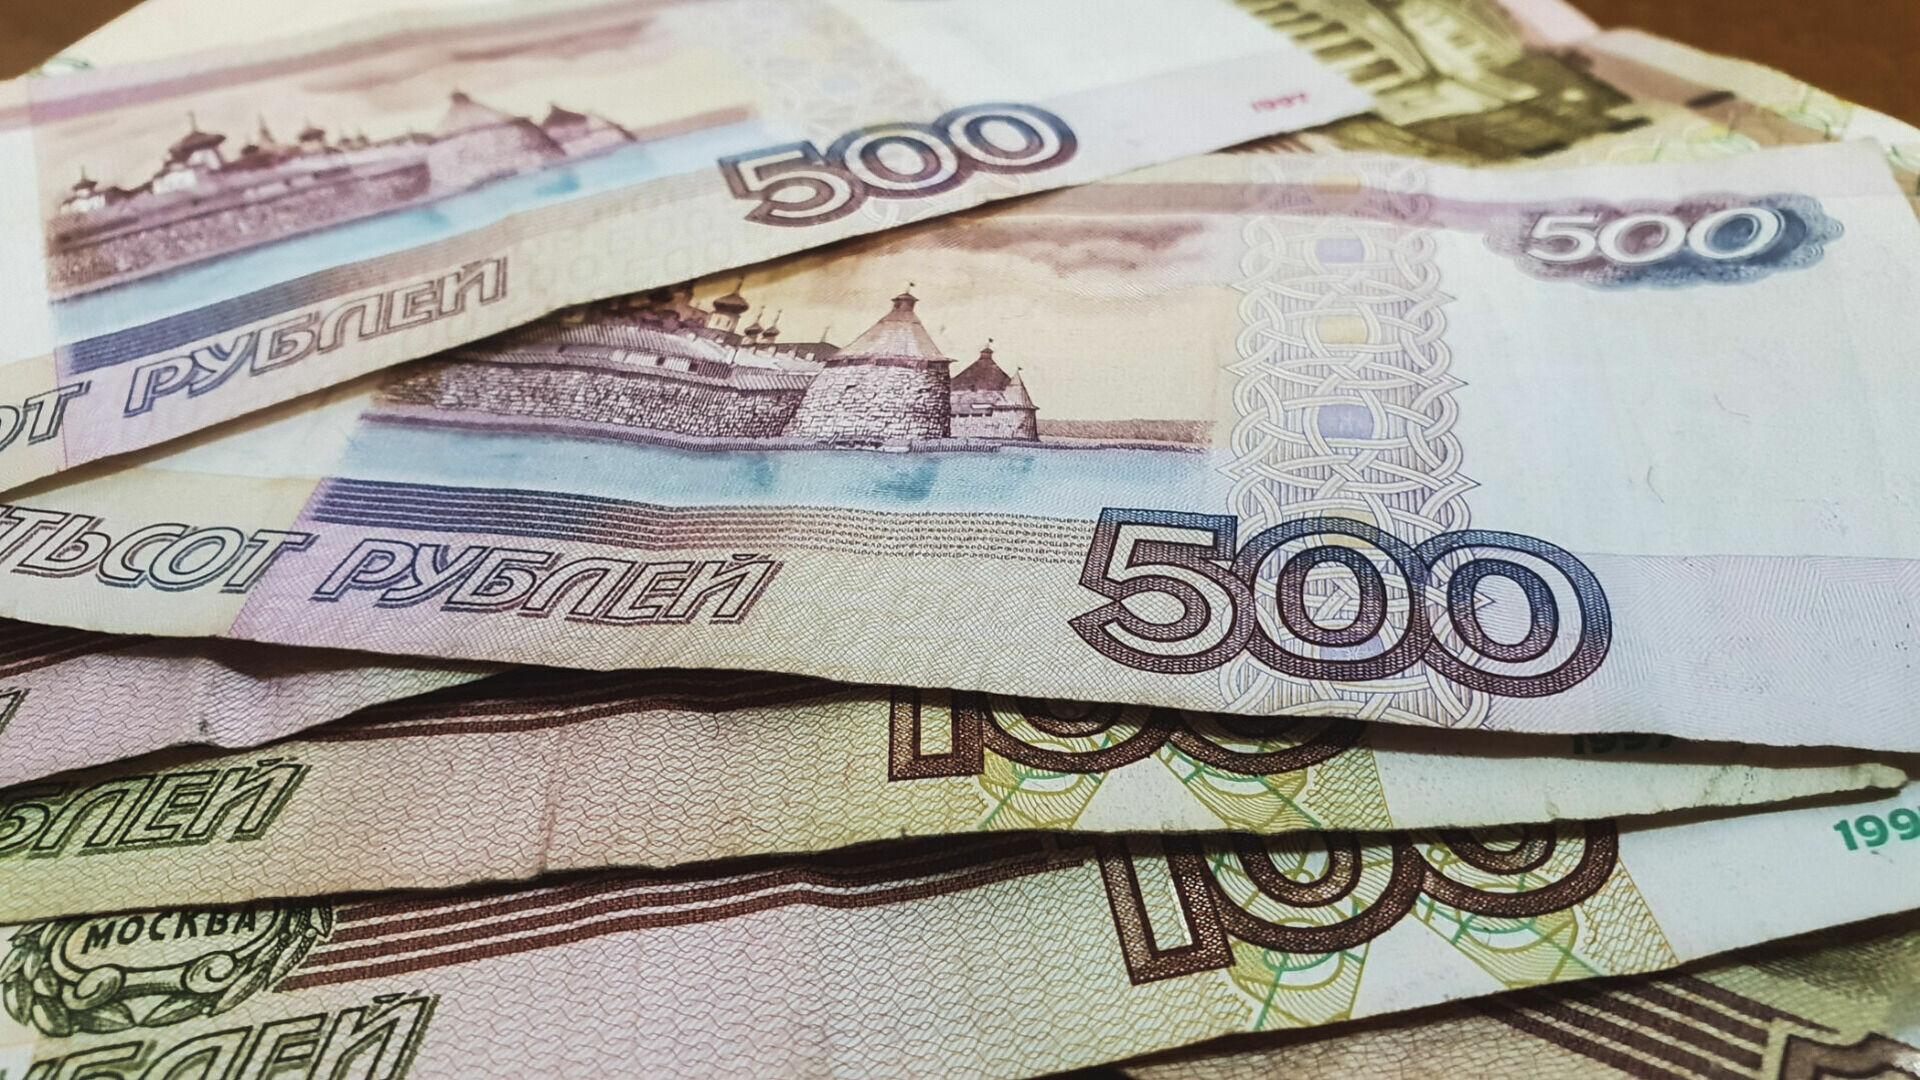 Экс-председателя ТСЖ в Ижевске будут судить за присвоение средств